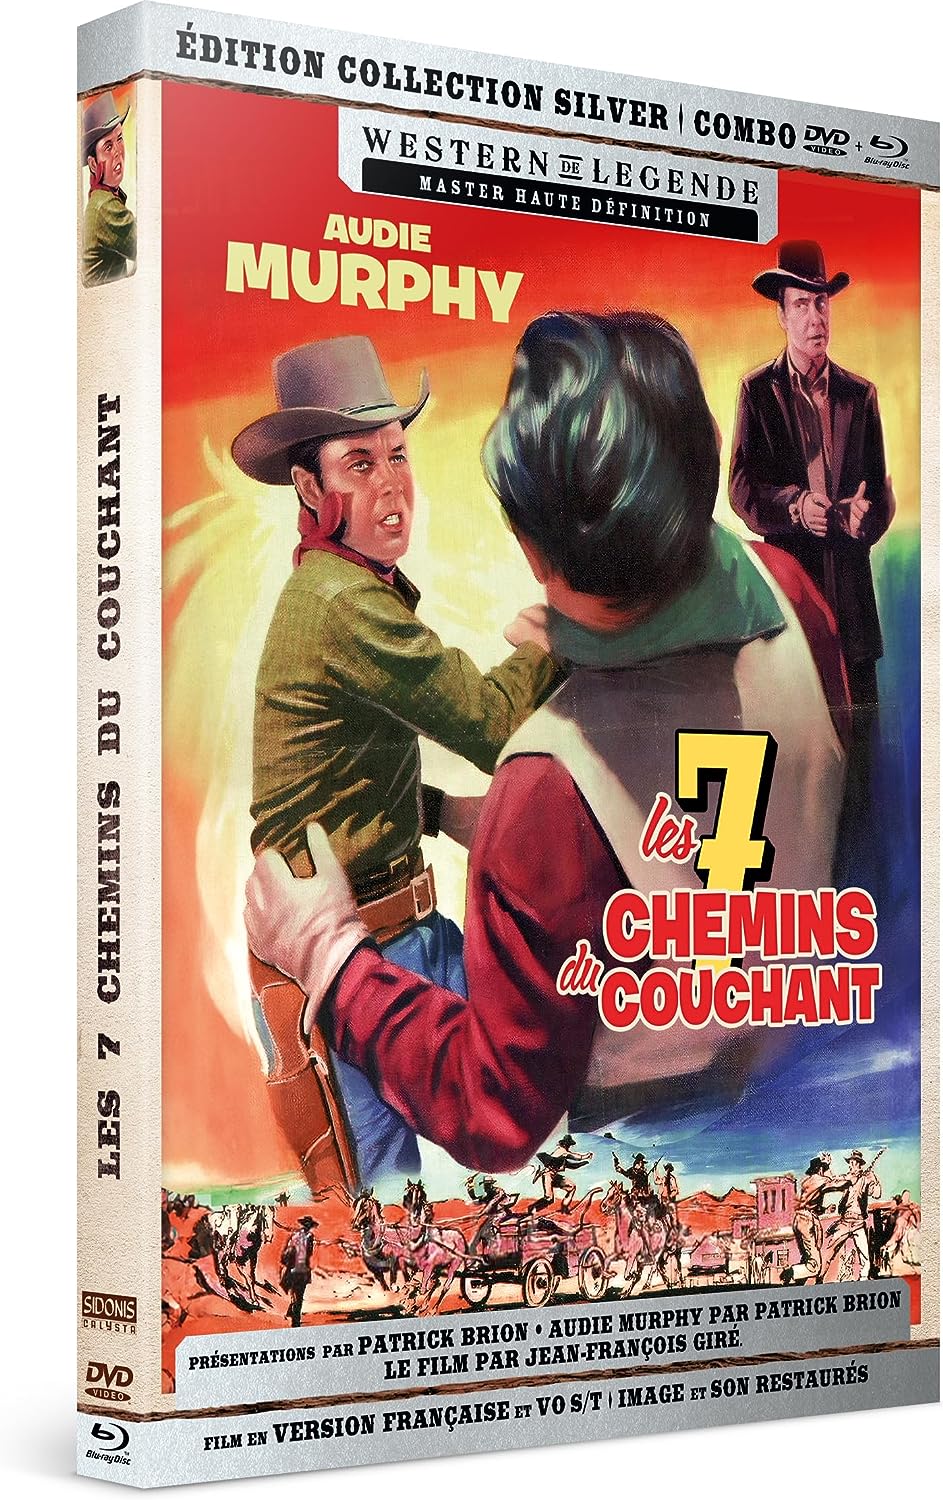 Les 7 chemins du couchant (1960) - front cover